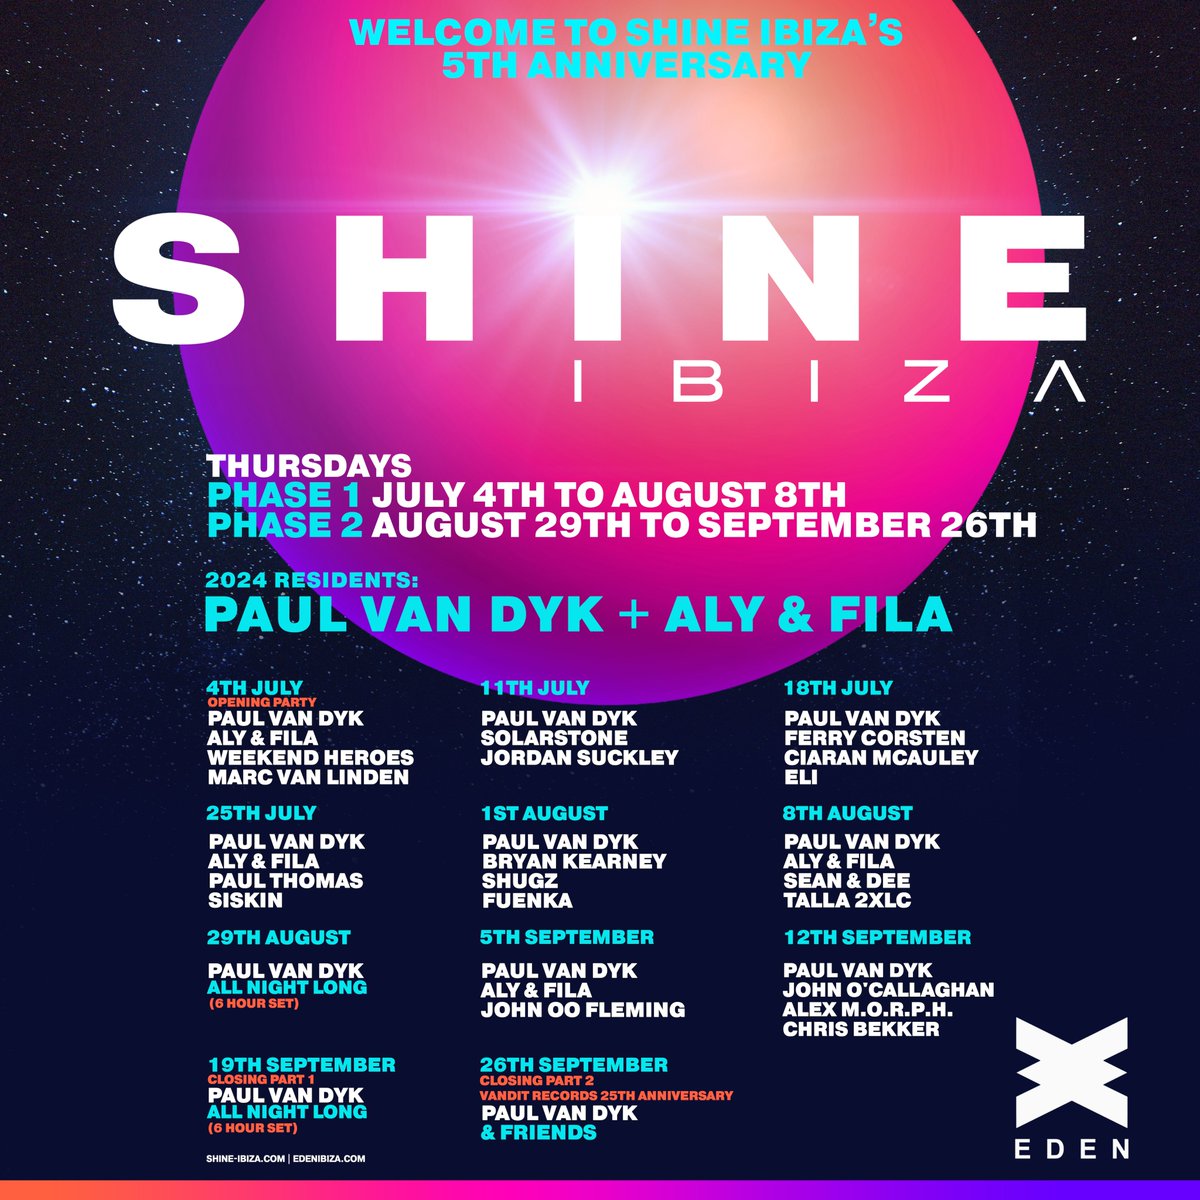 Welcome to @SHINE_Ibiza's 5th anniversary at @eden_ibiza ✨ Tickets tinyurl.com/shineibiza